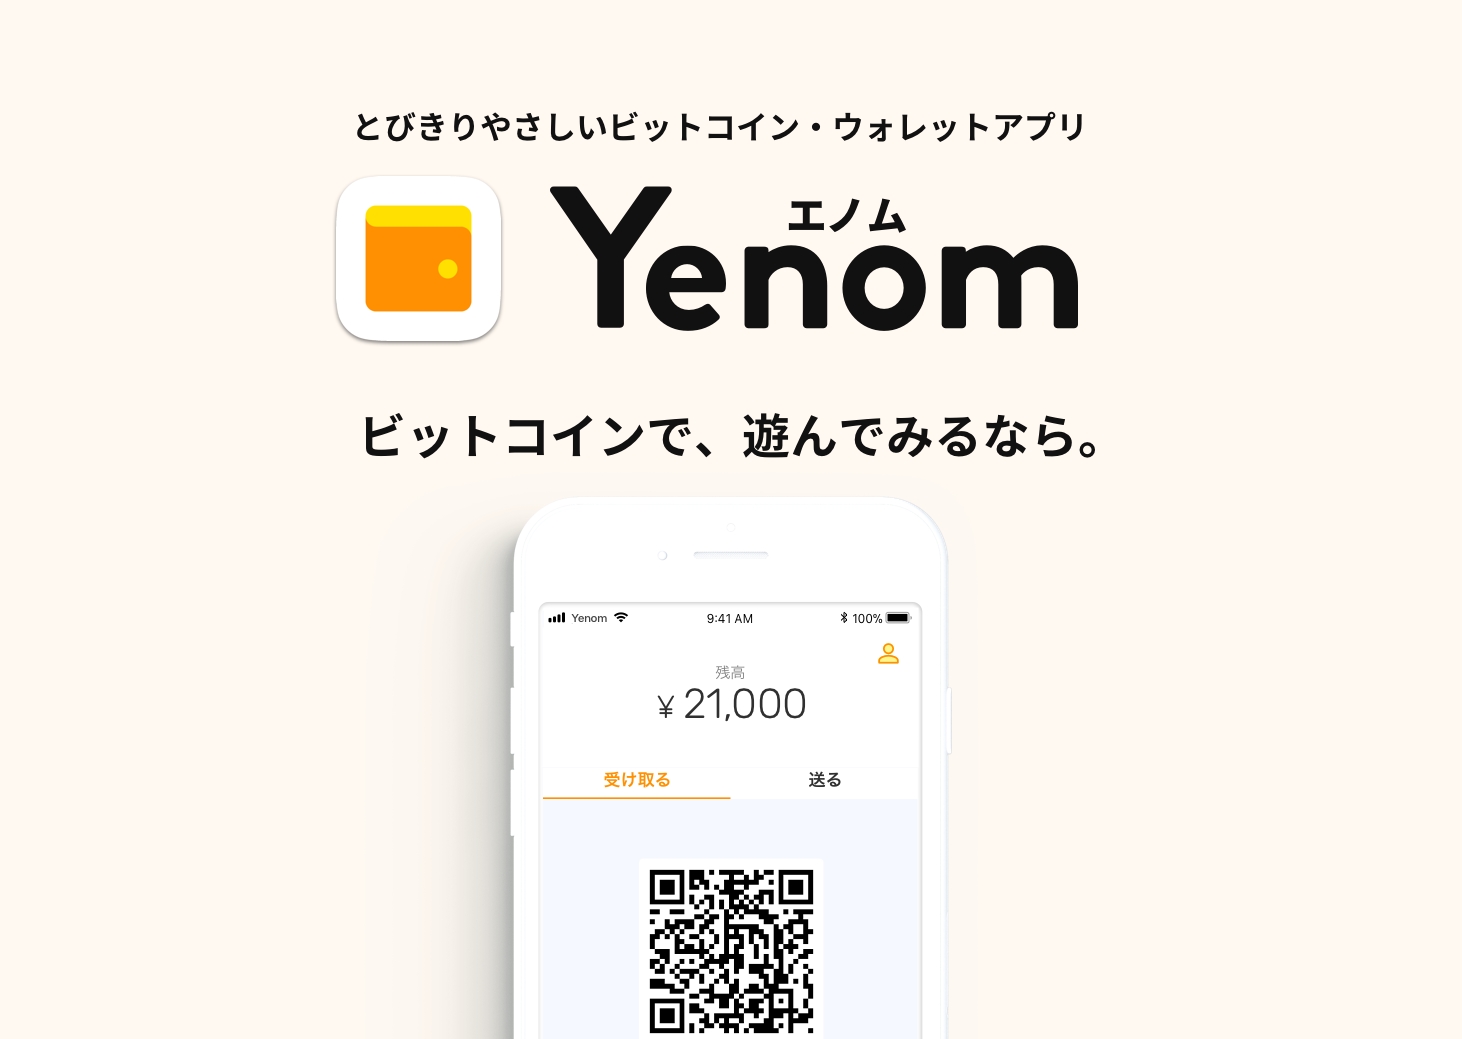 株式会社yenom Initial